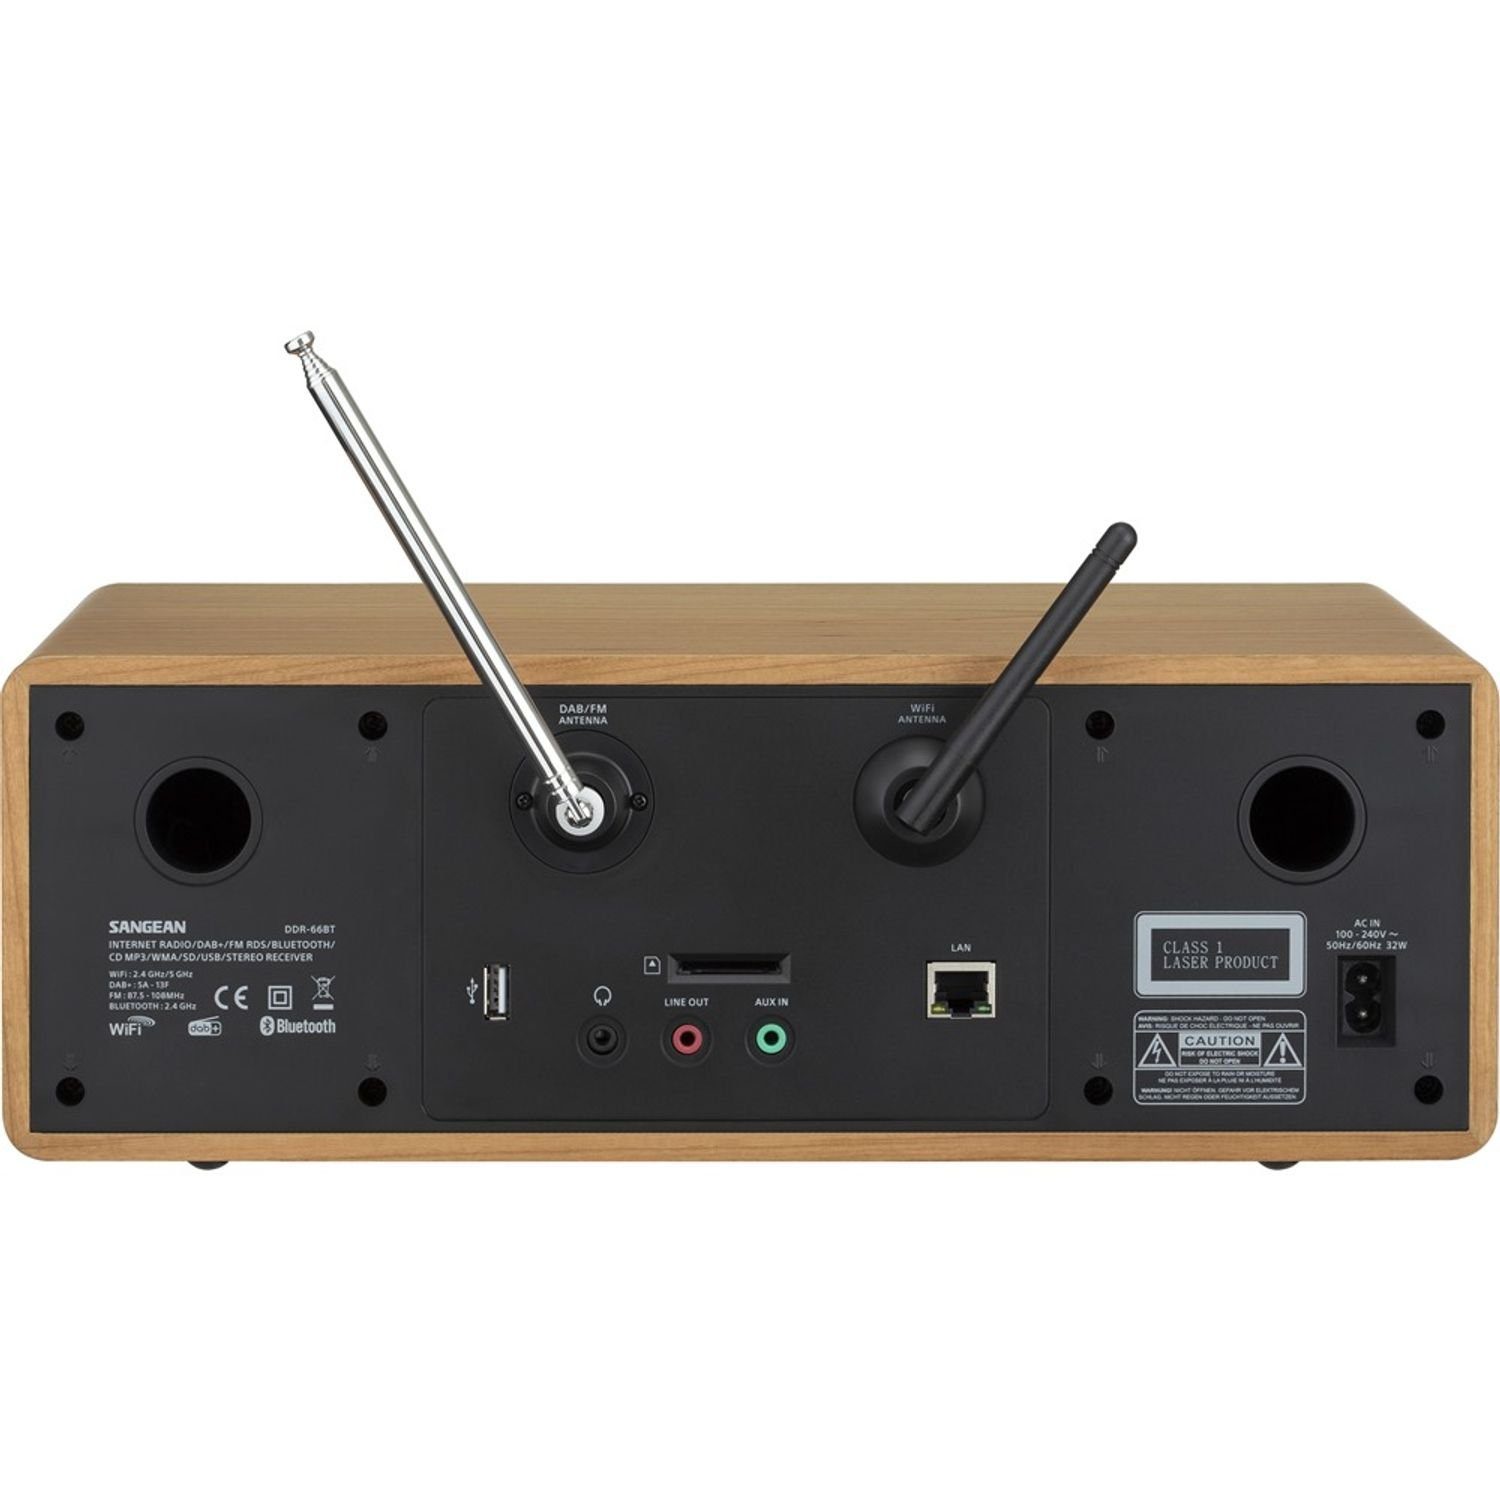 Sangean DDR-66 BT (DAB) Internet-Radio/DAB+/FM/CD/USB/SD/Bluetooth (DAB) Digitalradio Walnut